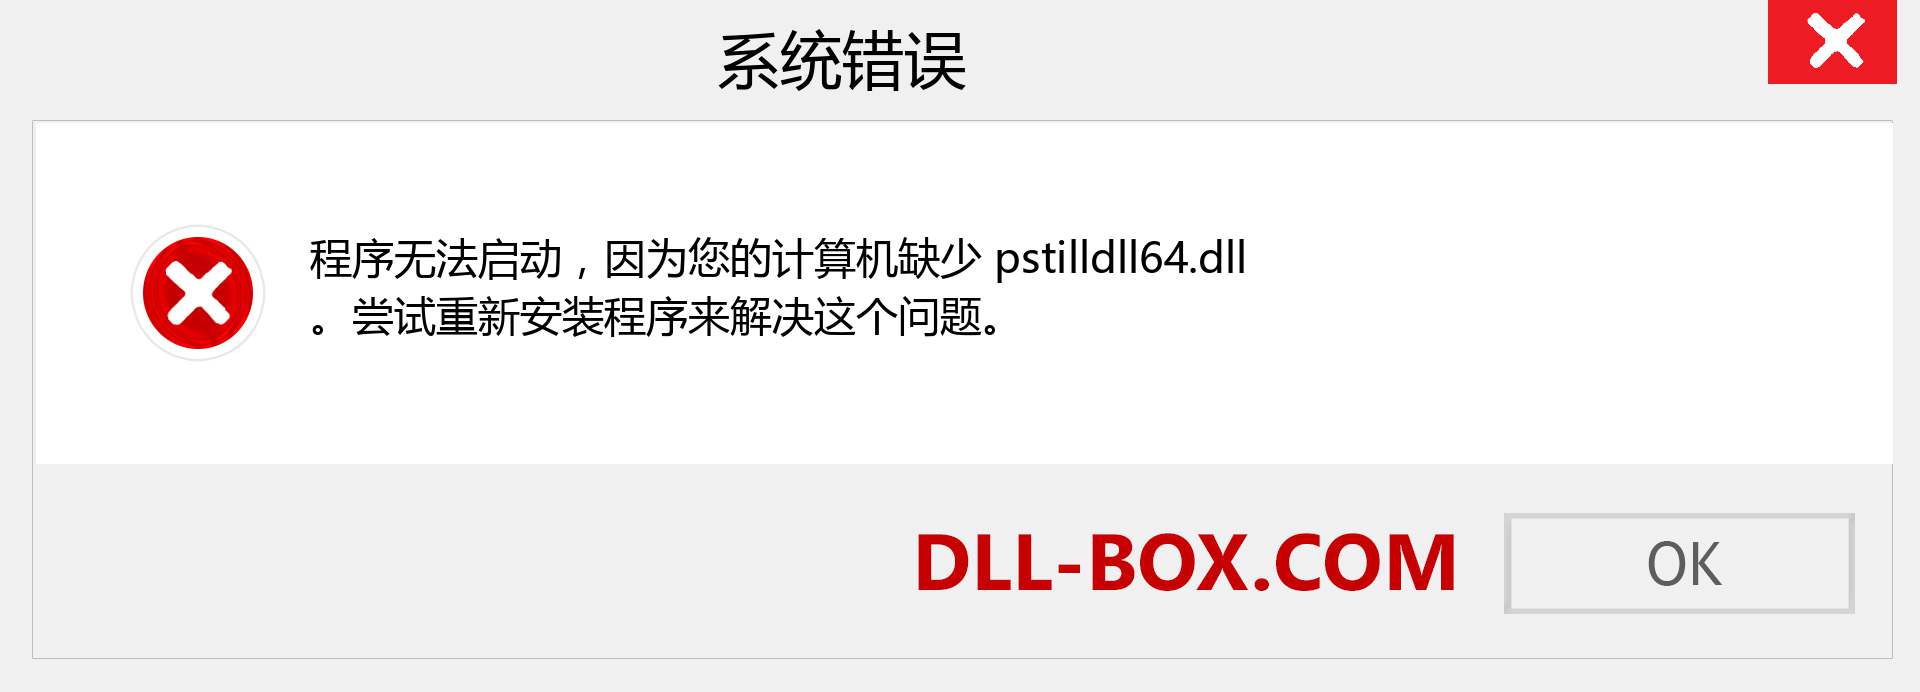 pstilldll64.dll 文件丢失？。 适用于 Windows 7、8、10 的下载 - 修复 Windows、照片、图像上的 pstilldll64 dll 丢失错误